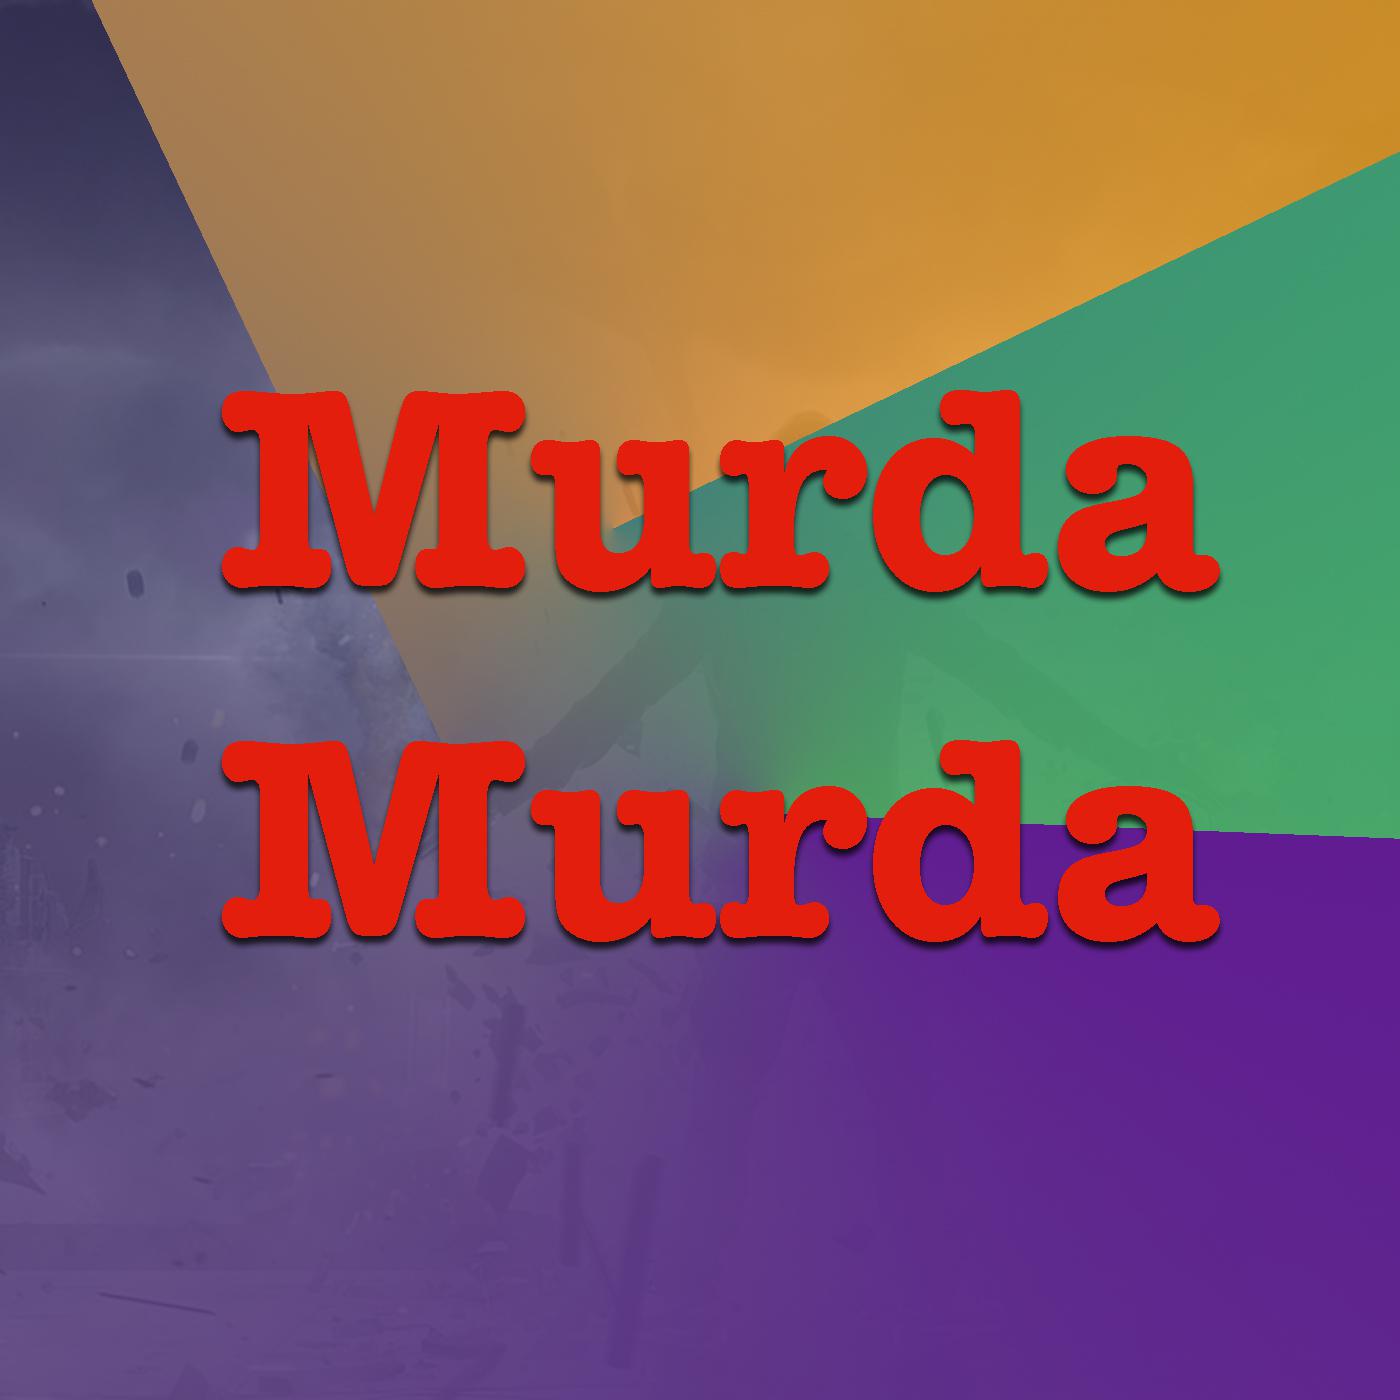 Murda Murda